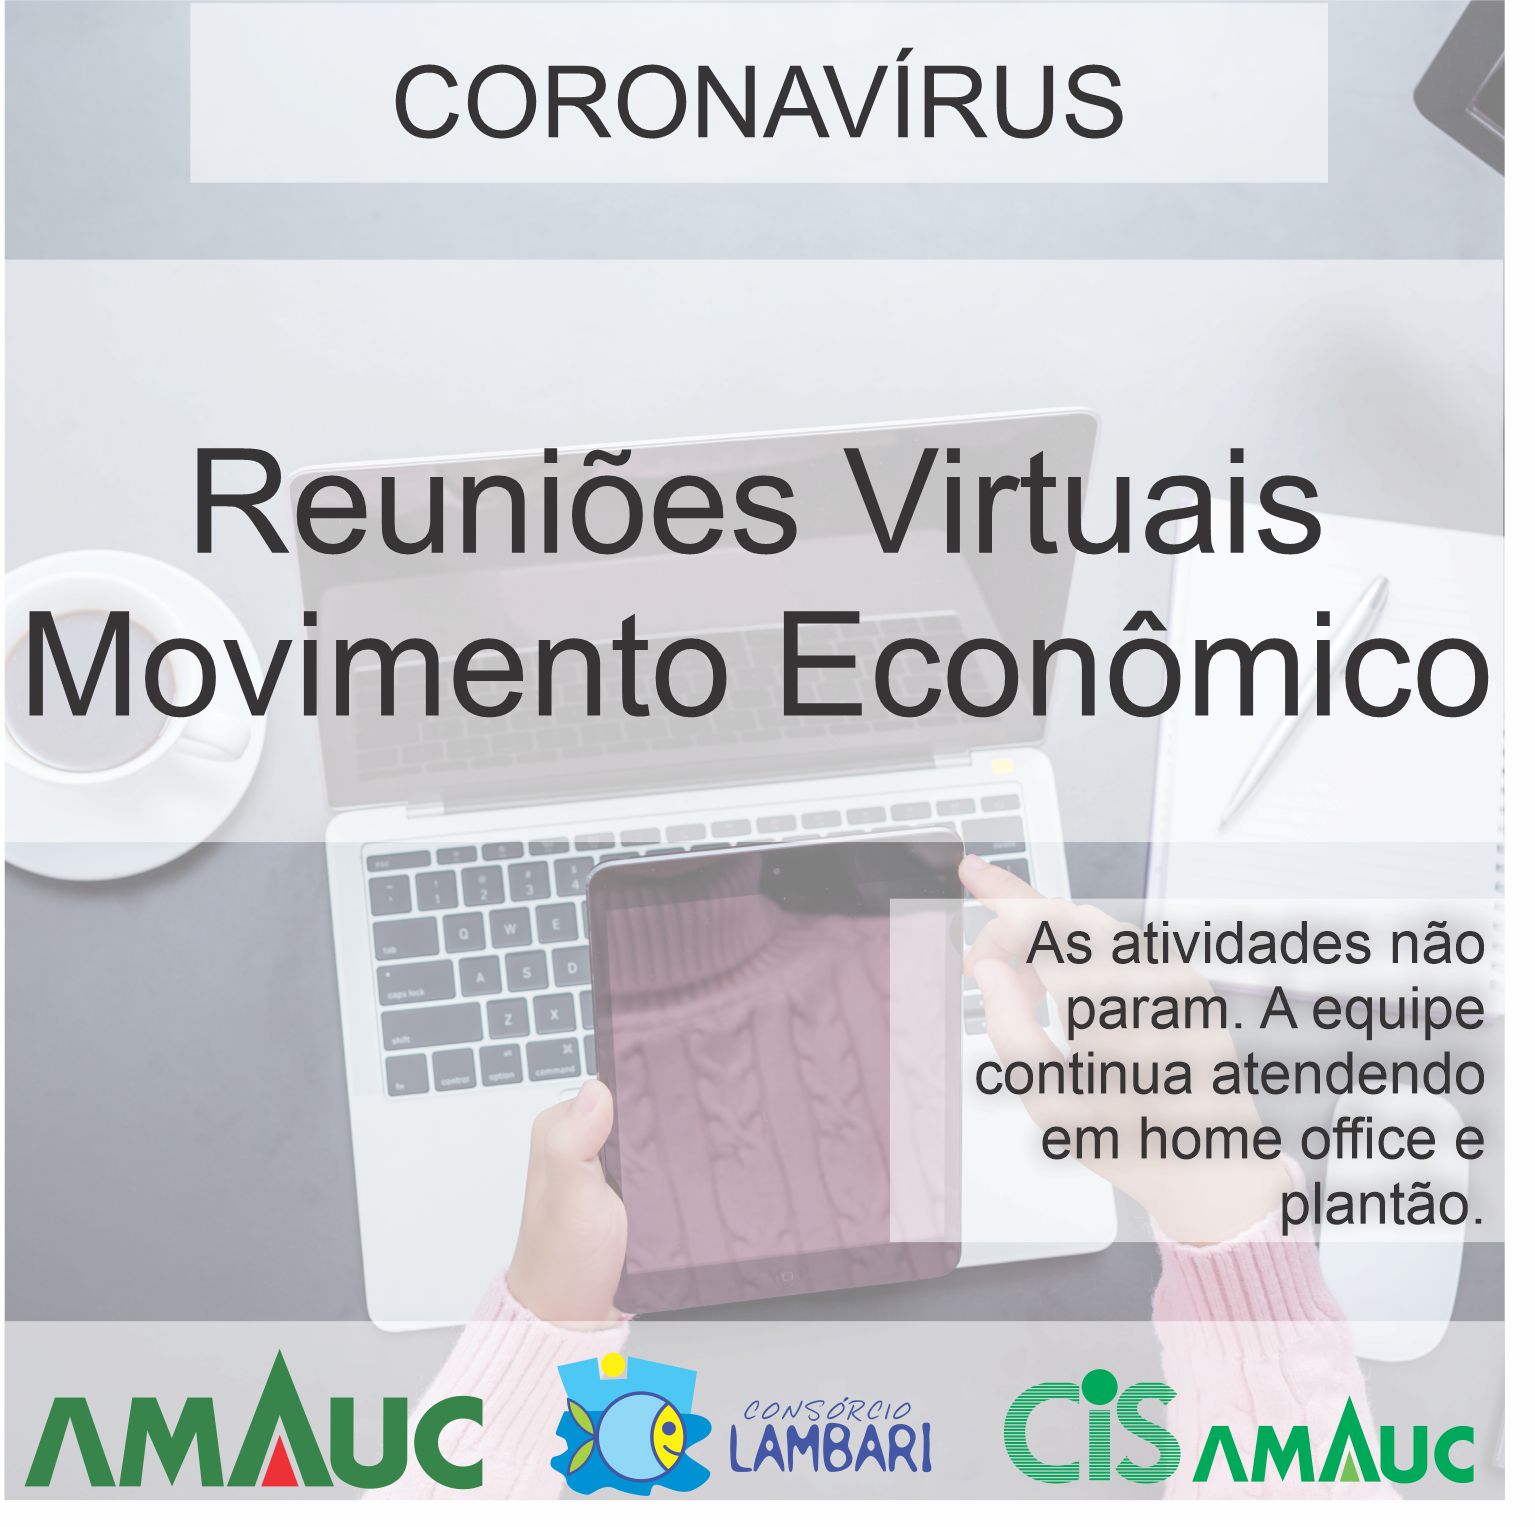 You are currently viewing Técnicos da Amauc participaram das reuniões virtuais para tratar assuntos referente ao movimento econômico